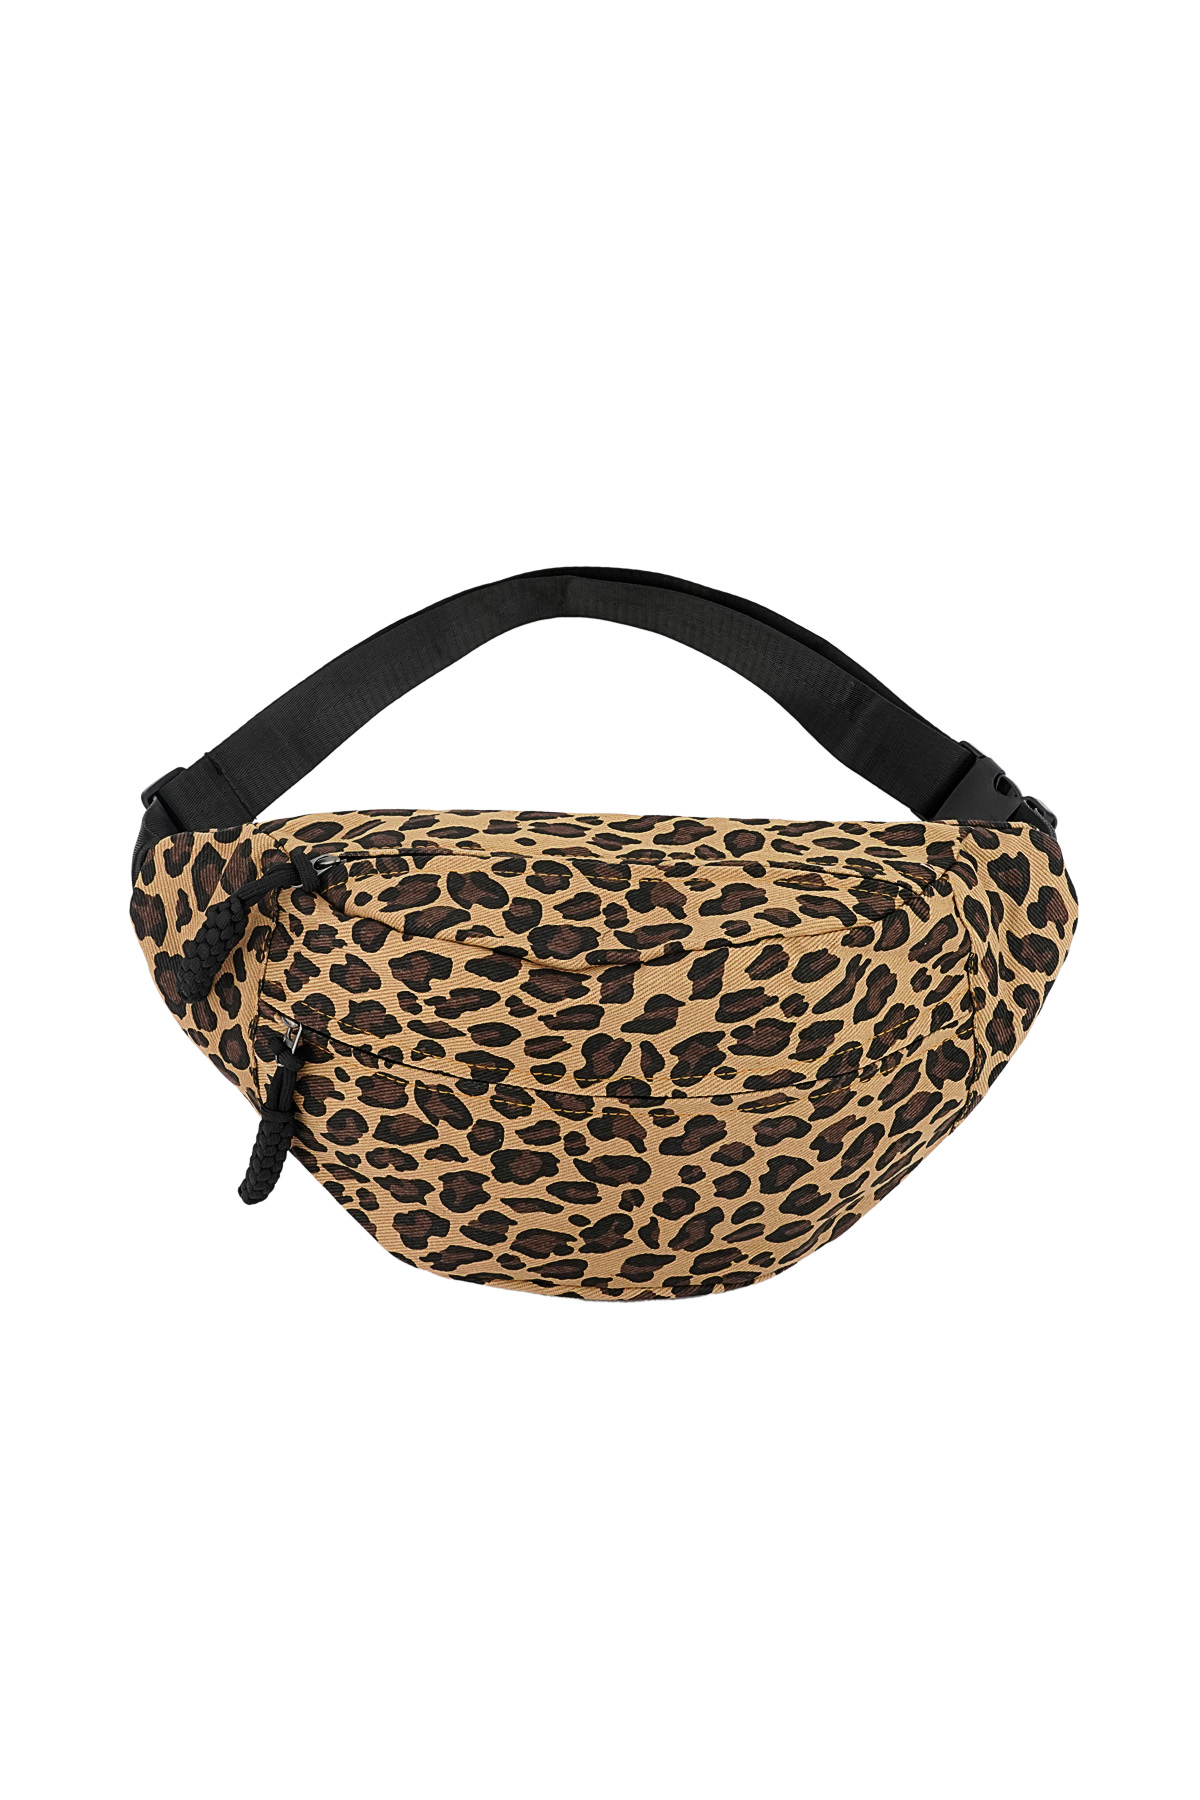 Hüfttasche mit Leopardenmuster - braun